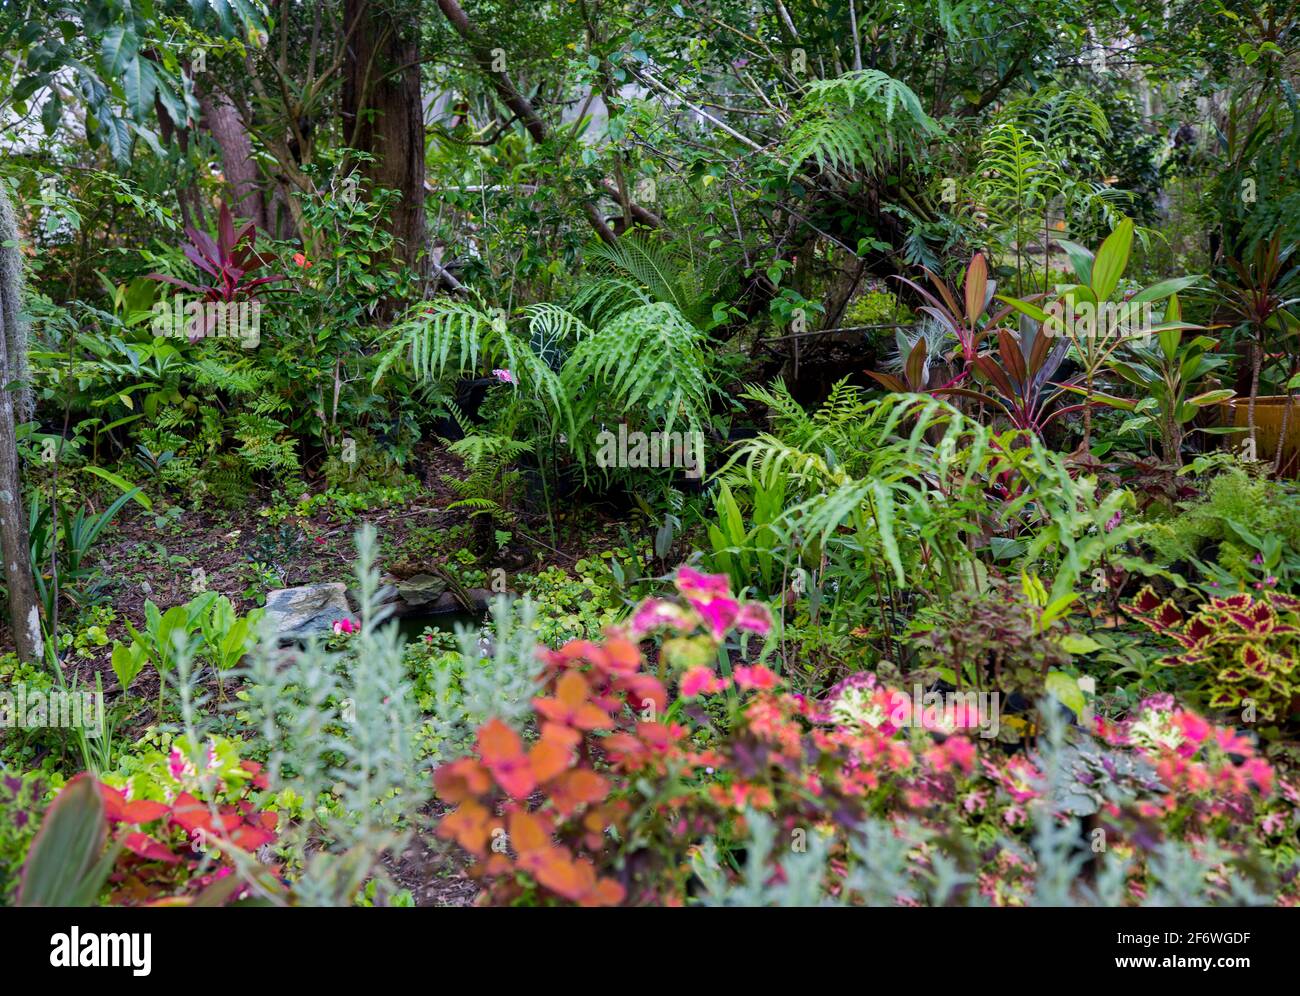 Exuberante jardín subtropical con helechos verdes, plantas de follaje de colores - cordylines y coleus, bajo un dosel de árboles en Australia Foto de stock